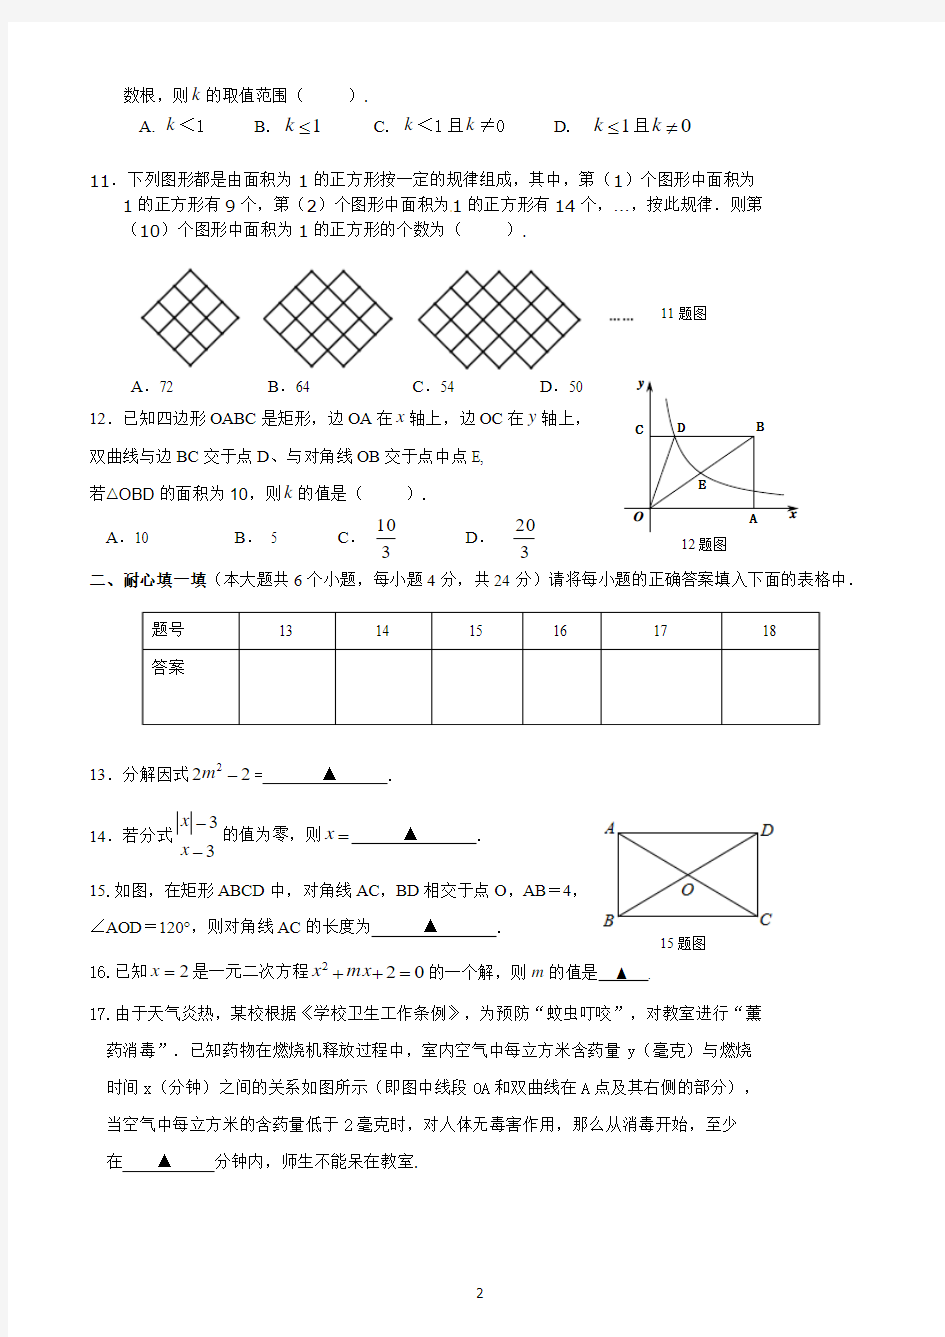 重庆一中初2016级14—15学年度下期期末考试数学试题